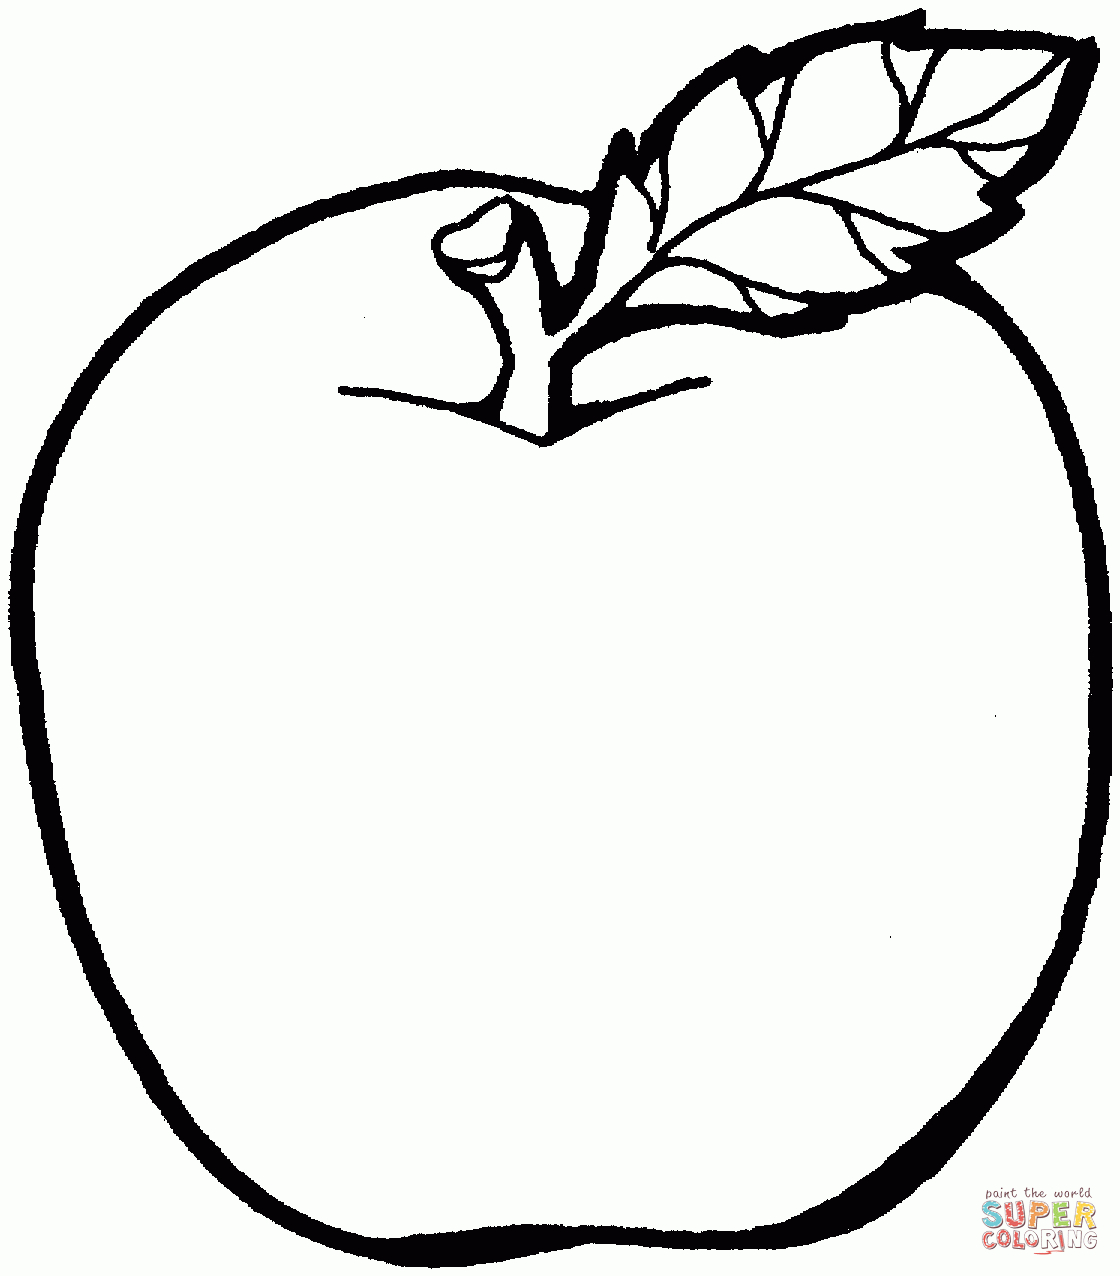 Ausmalbilder Äpfel - Malvorlagen Kostenlos Zum Ausdrucken bestimmt für Ausmalbild Apfel